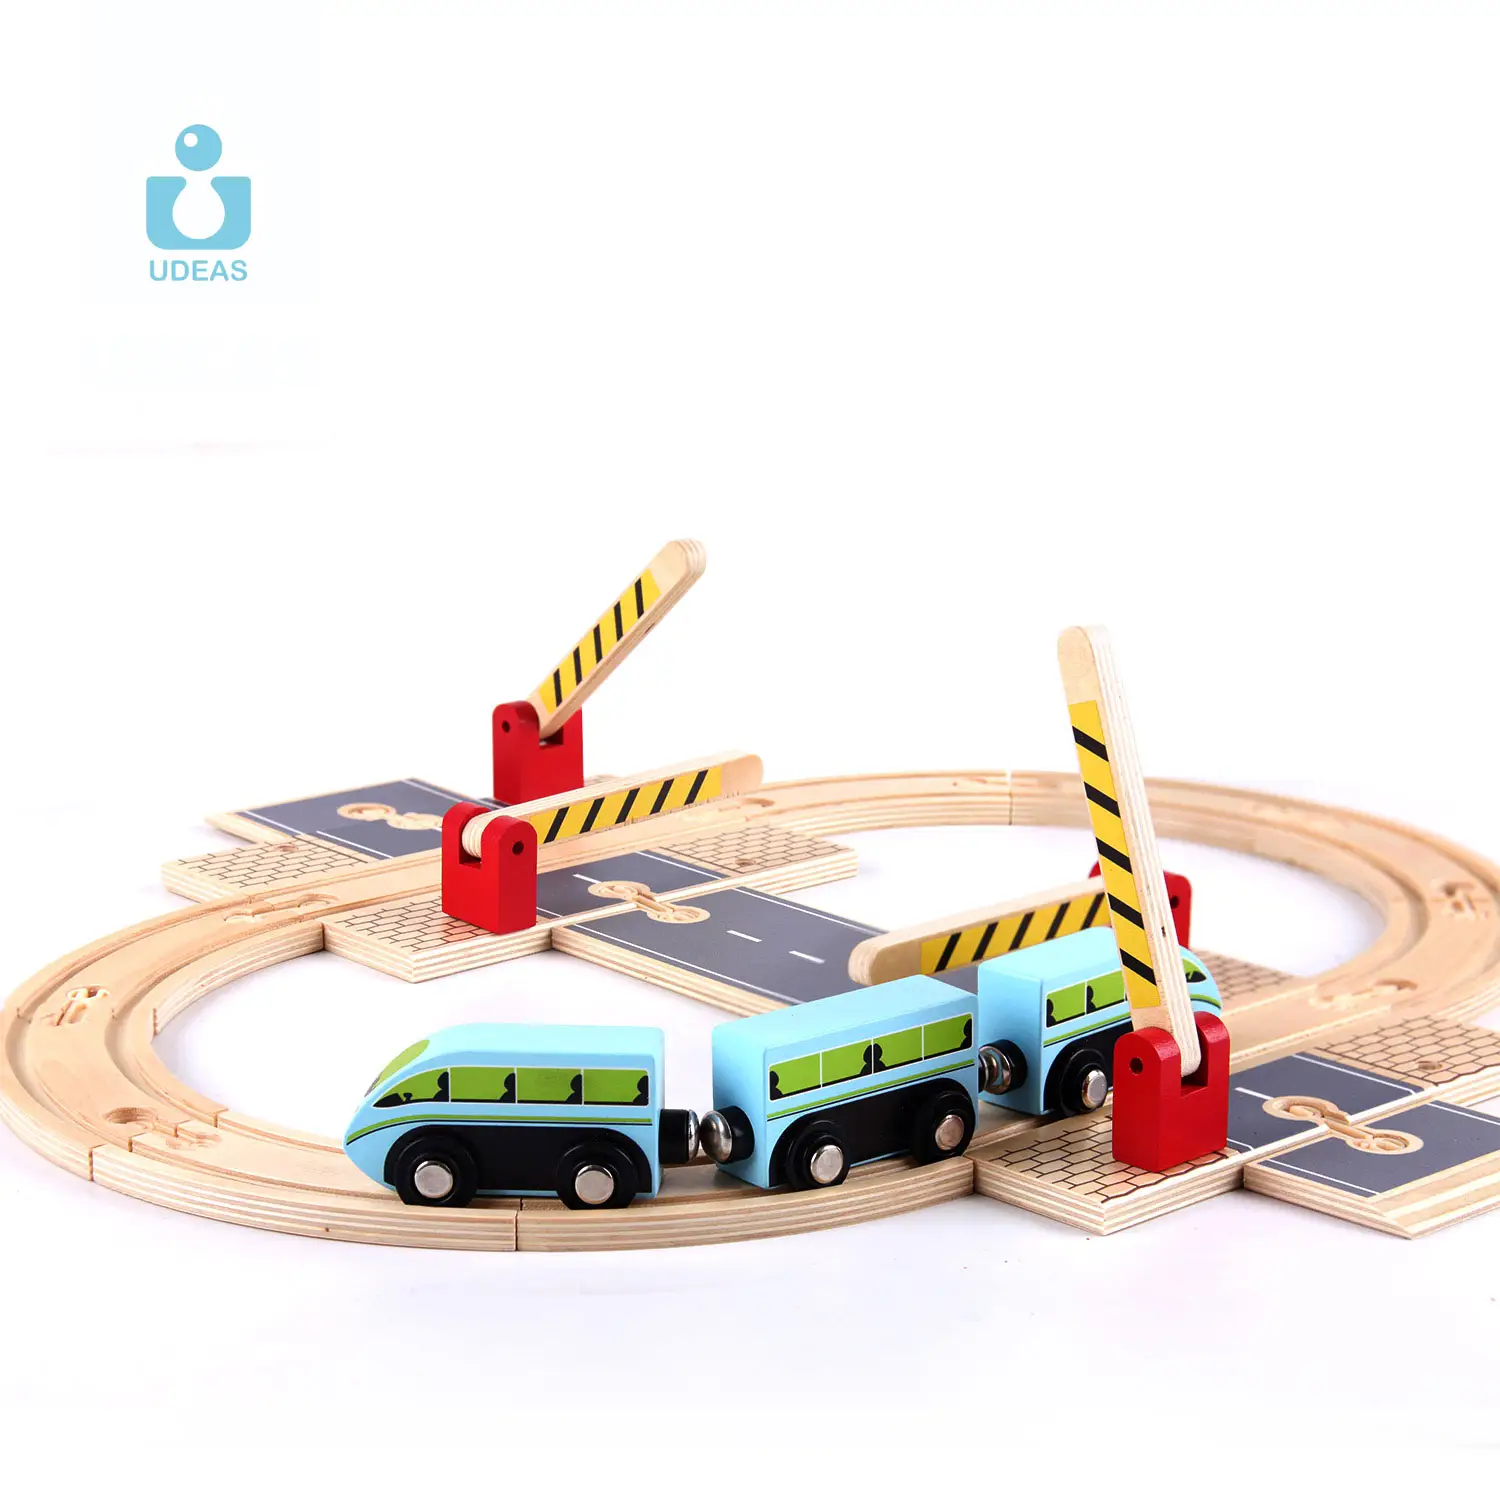 UDEAS-Juego de vías de tren de madera para niños, juguete educativo de vías de ferrocarril